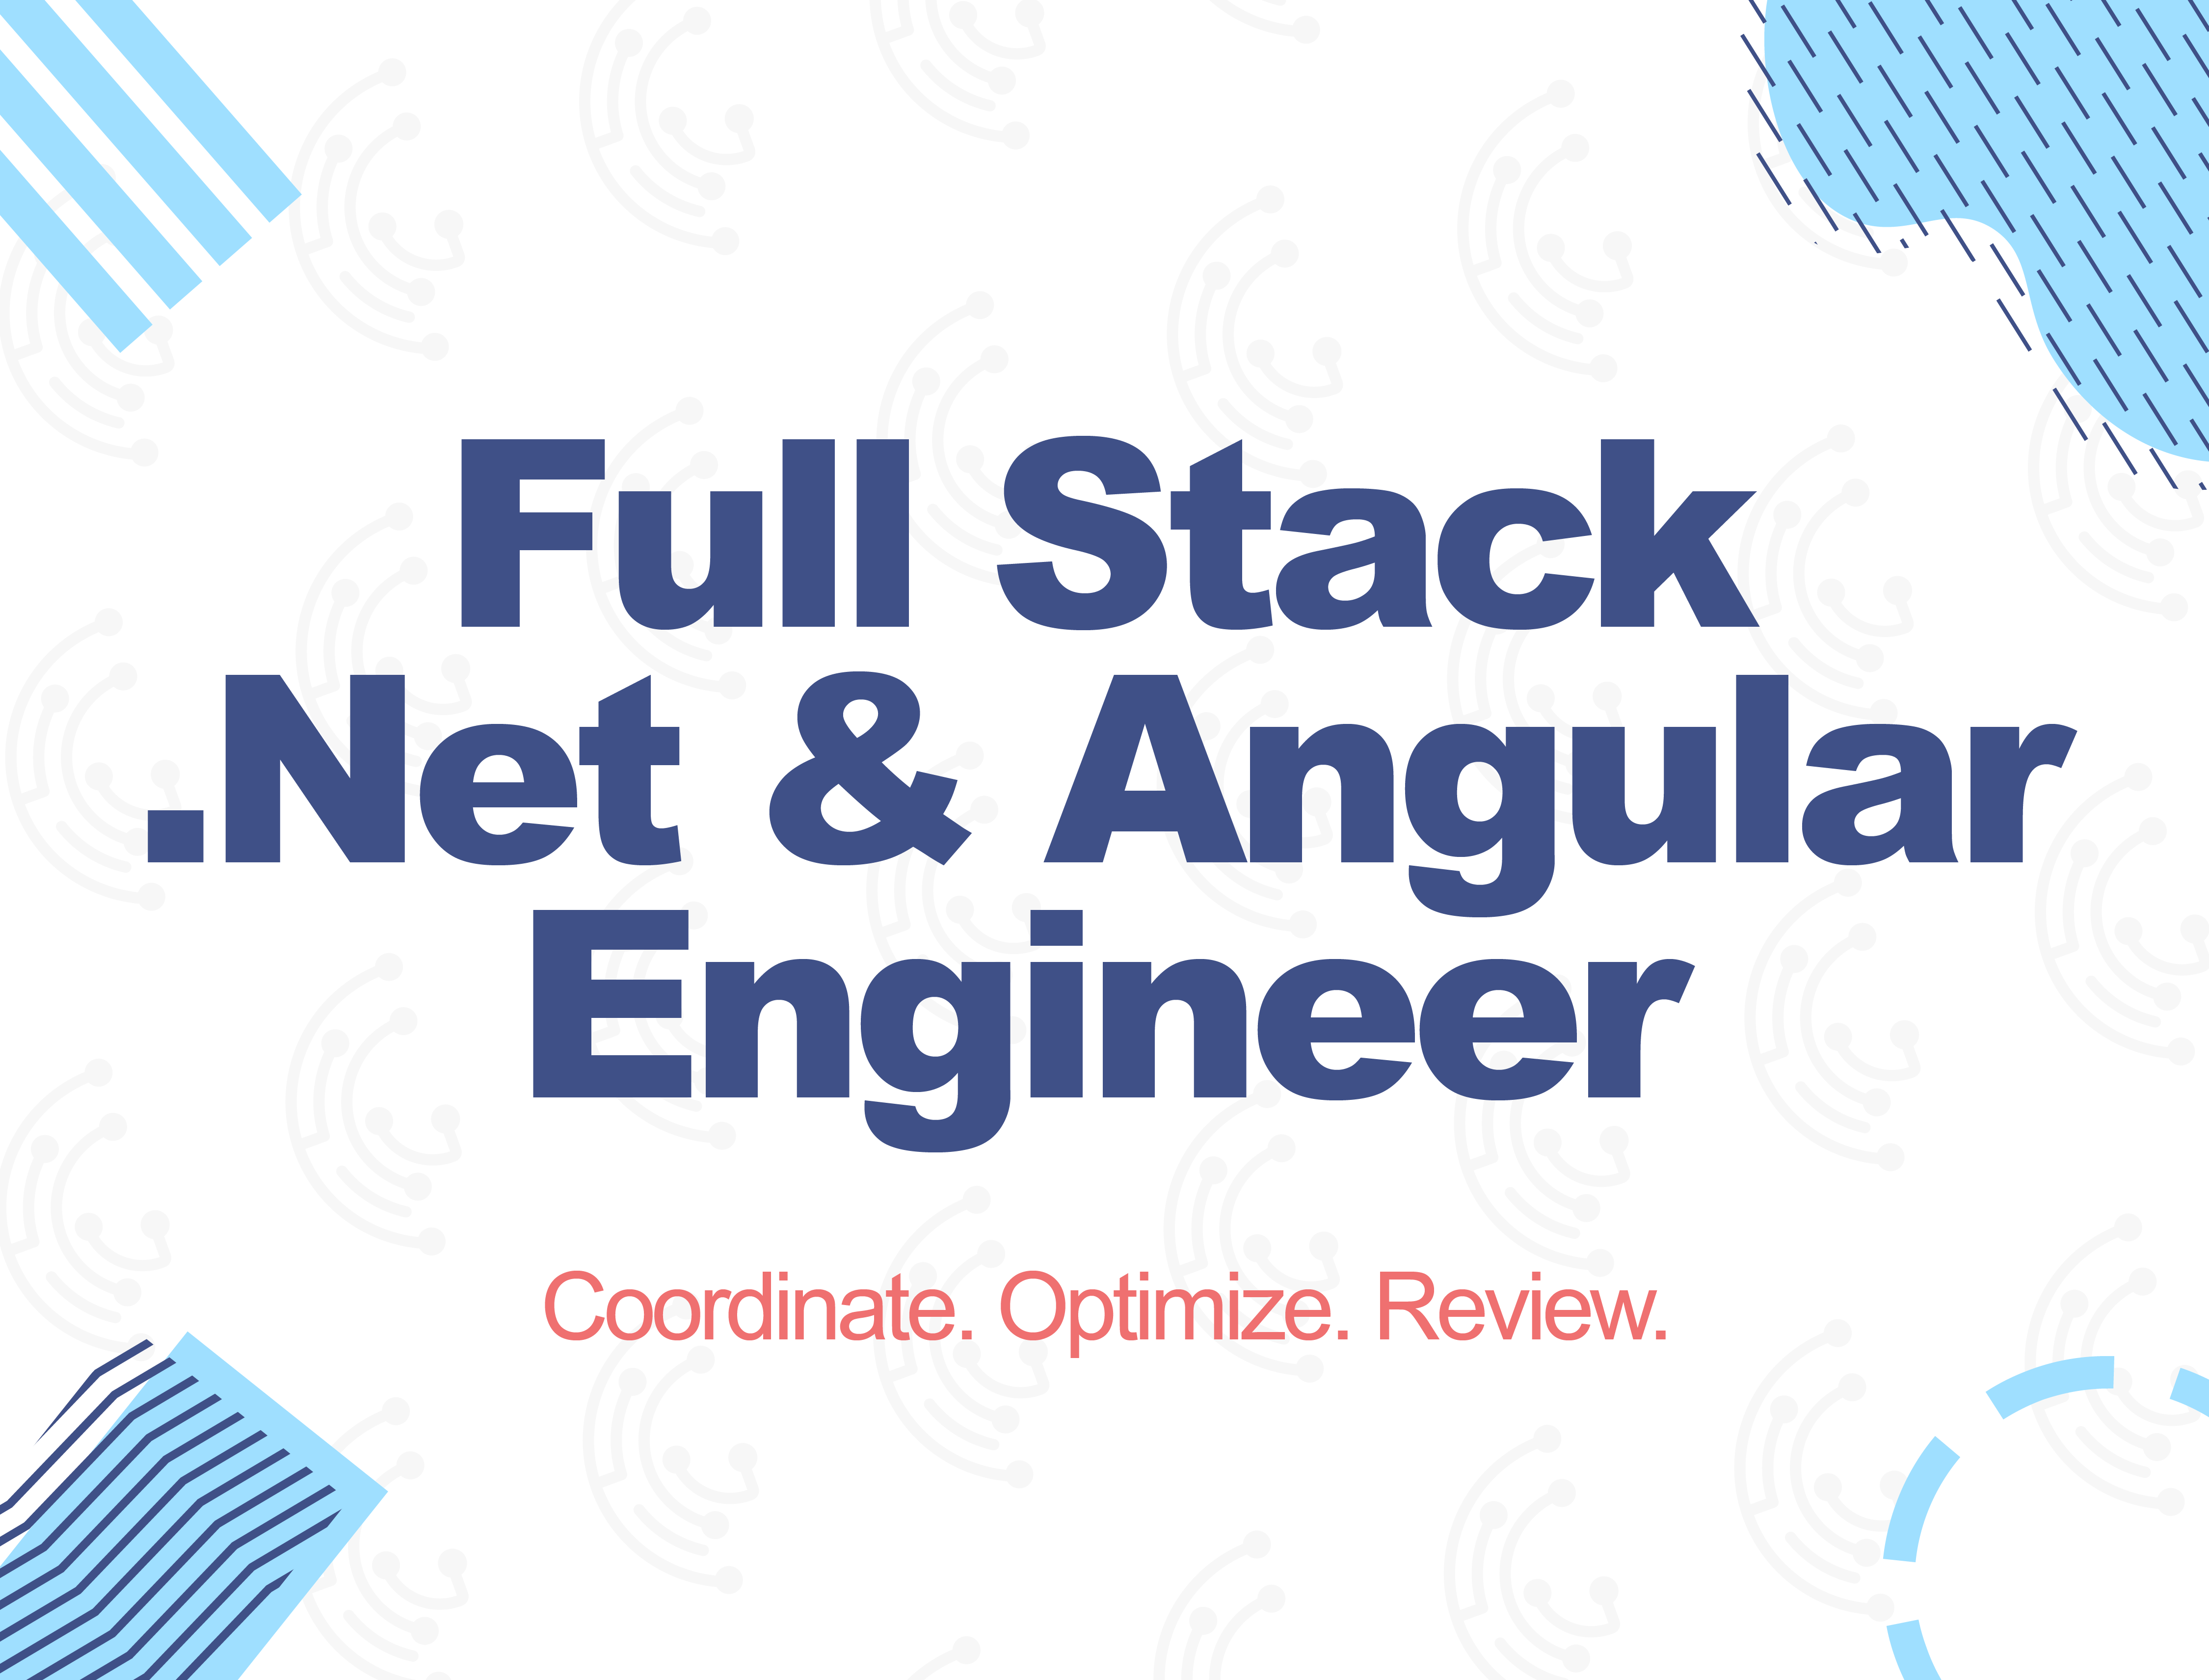 Senior Full stack .Net Angular Engineer